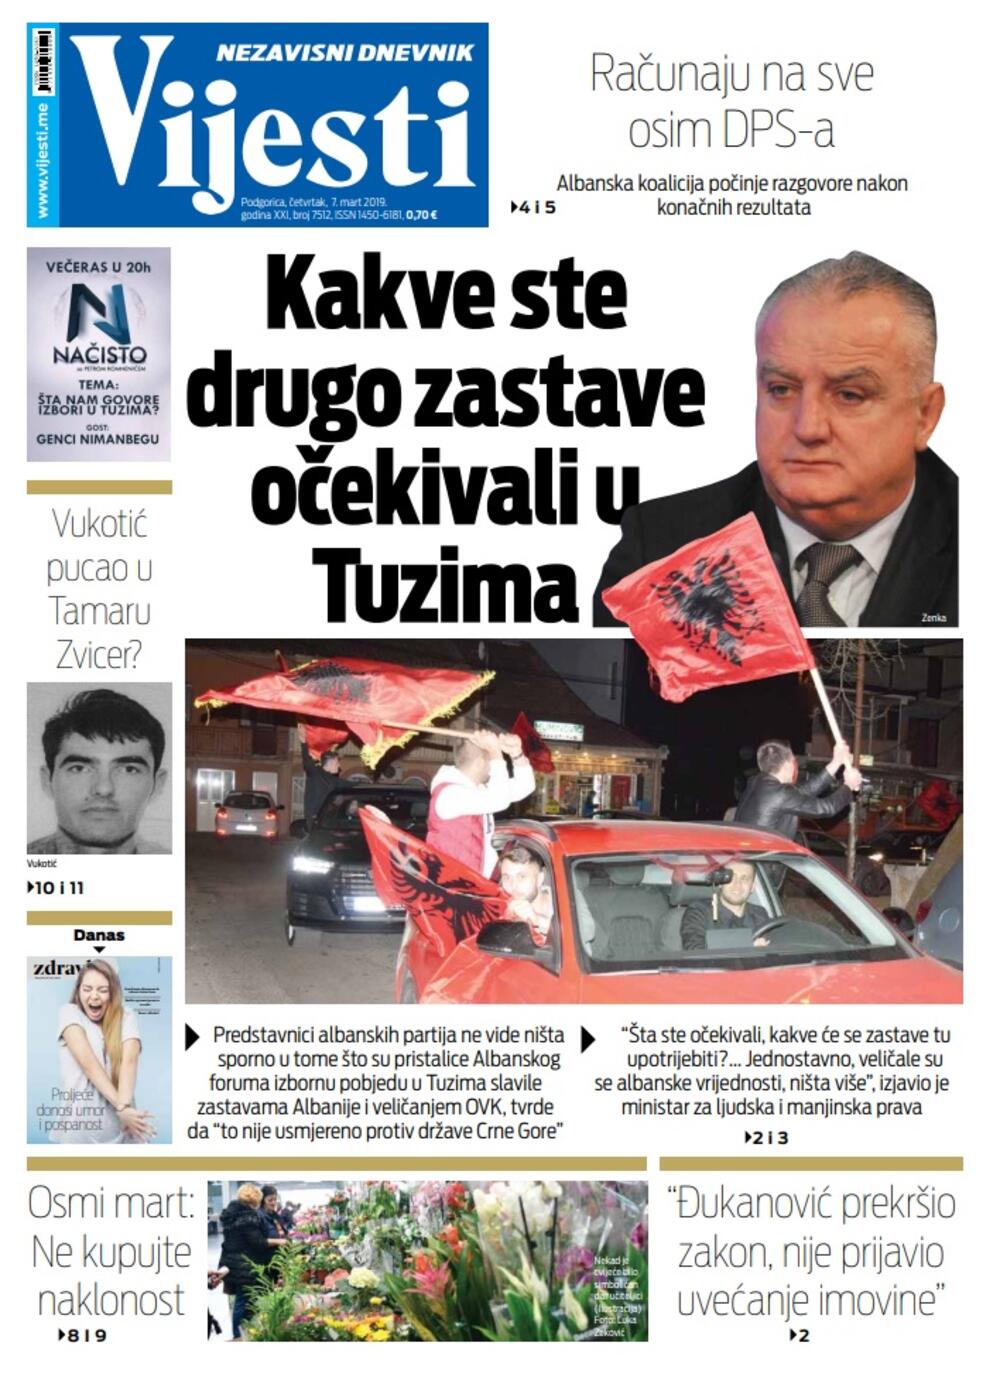 Naslovna strana "Vijesti" za 7. mart